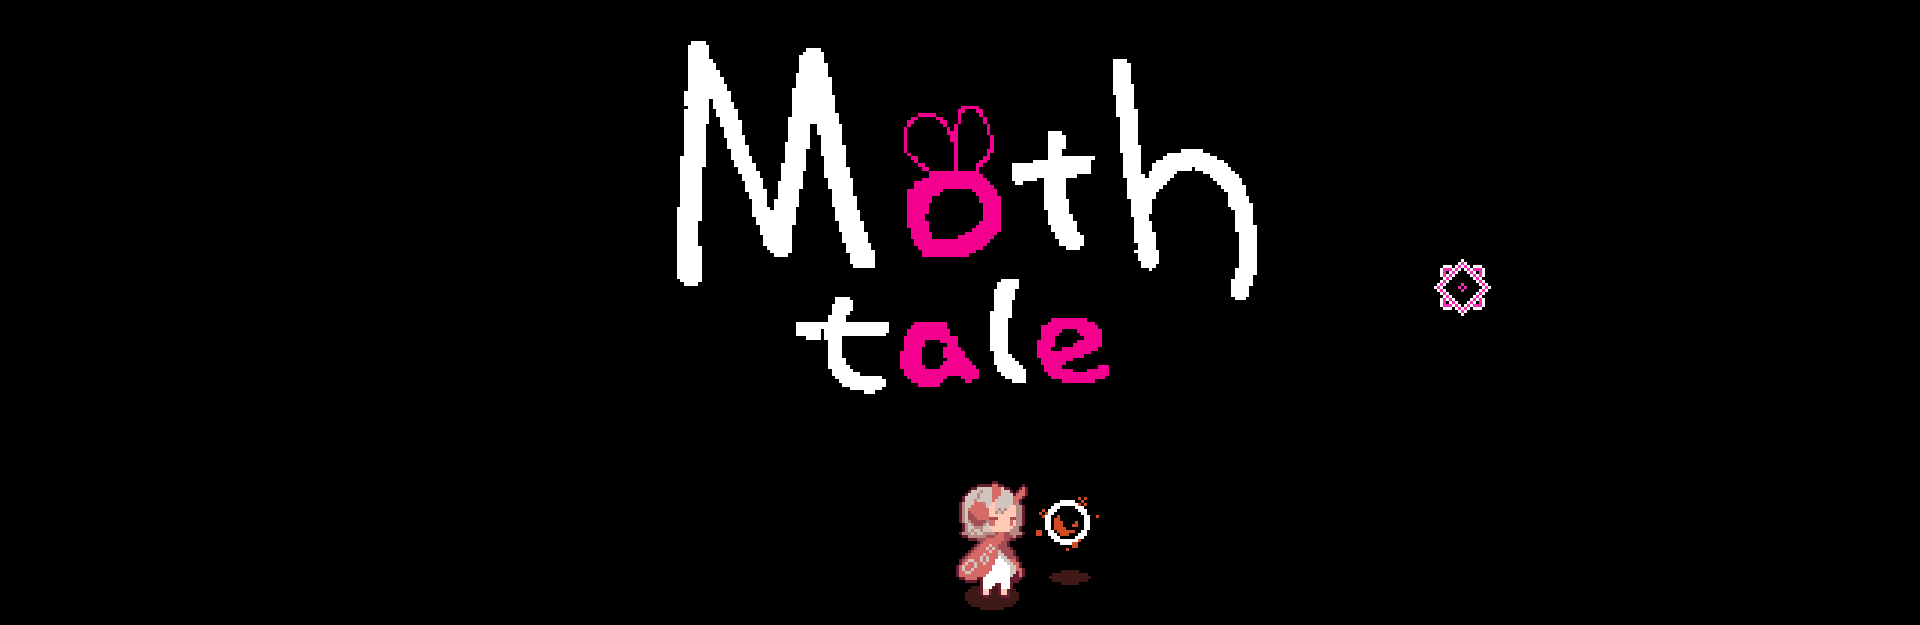 Moth tale